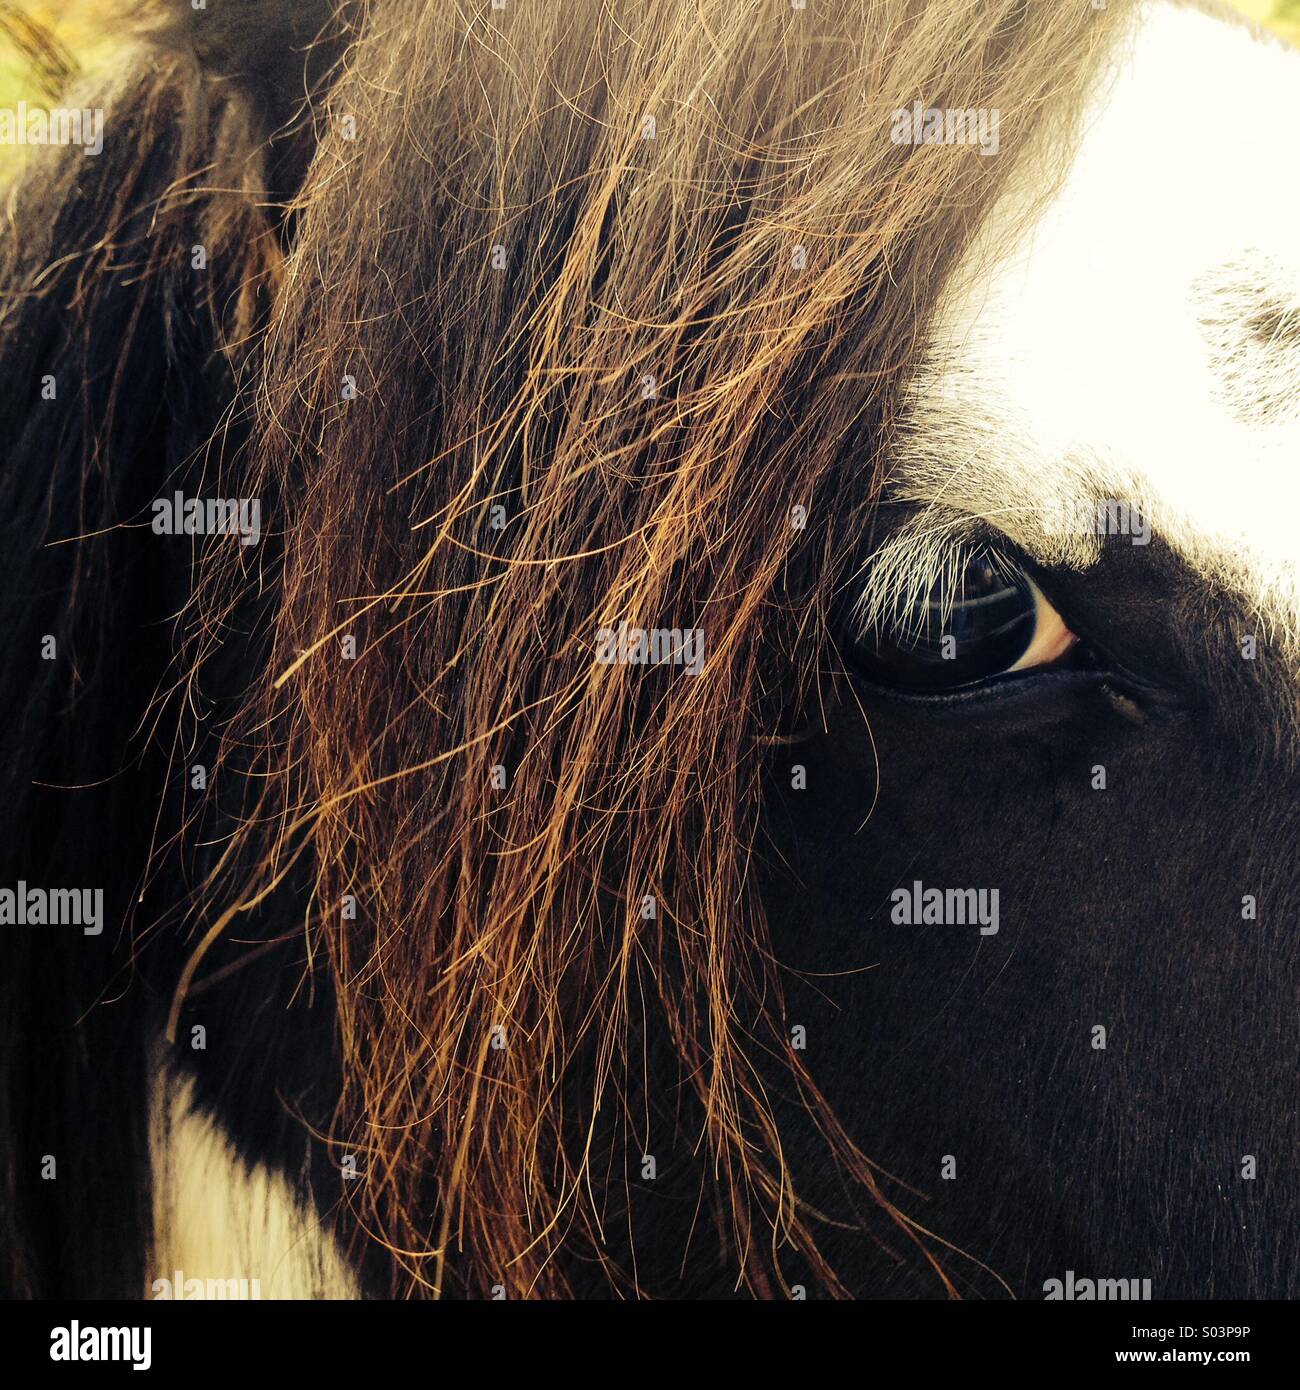 Hairy horse eye and eyelashes Stock Photo